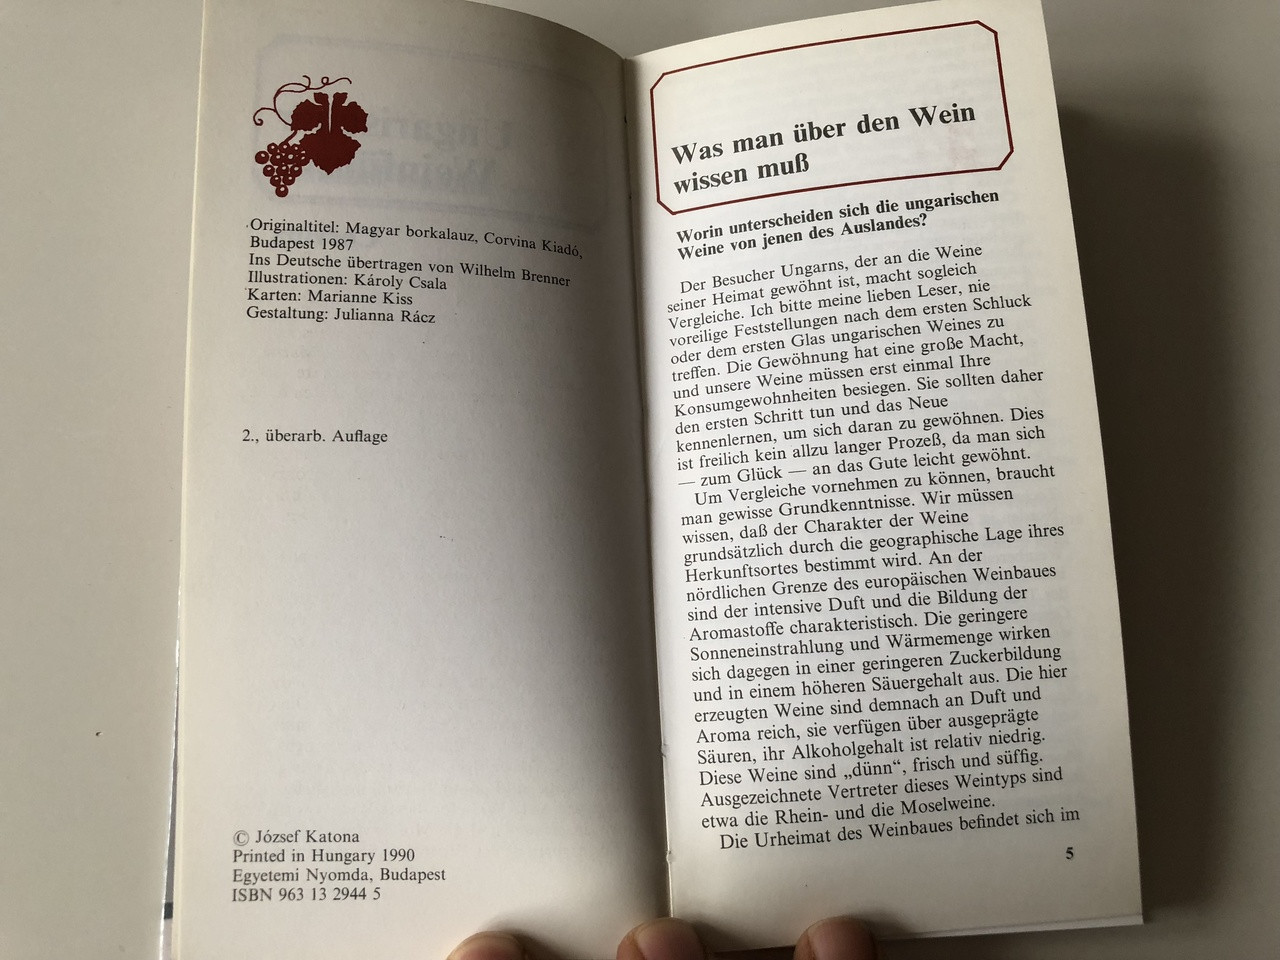 Ungarische Weinführer / Hungarian Wine Guide in German language / Corvina /  Hardcover, 1990 - bibleinmylanguage